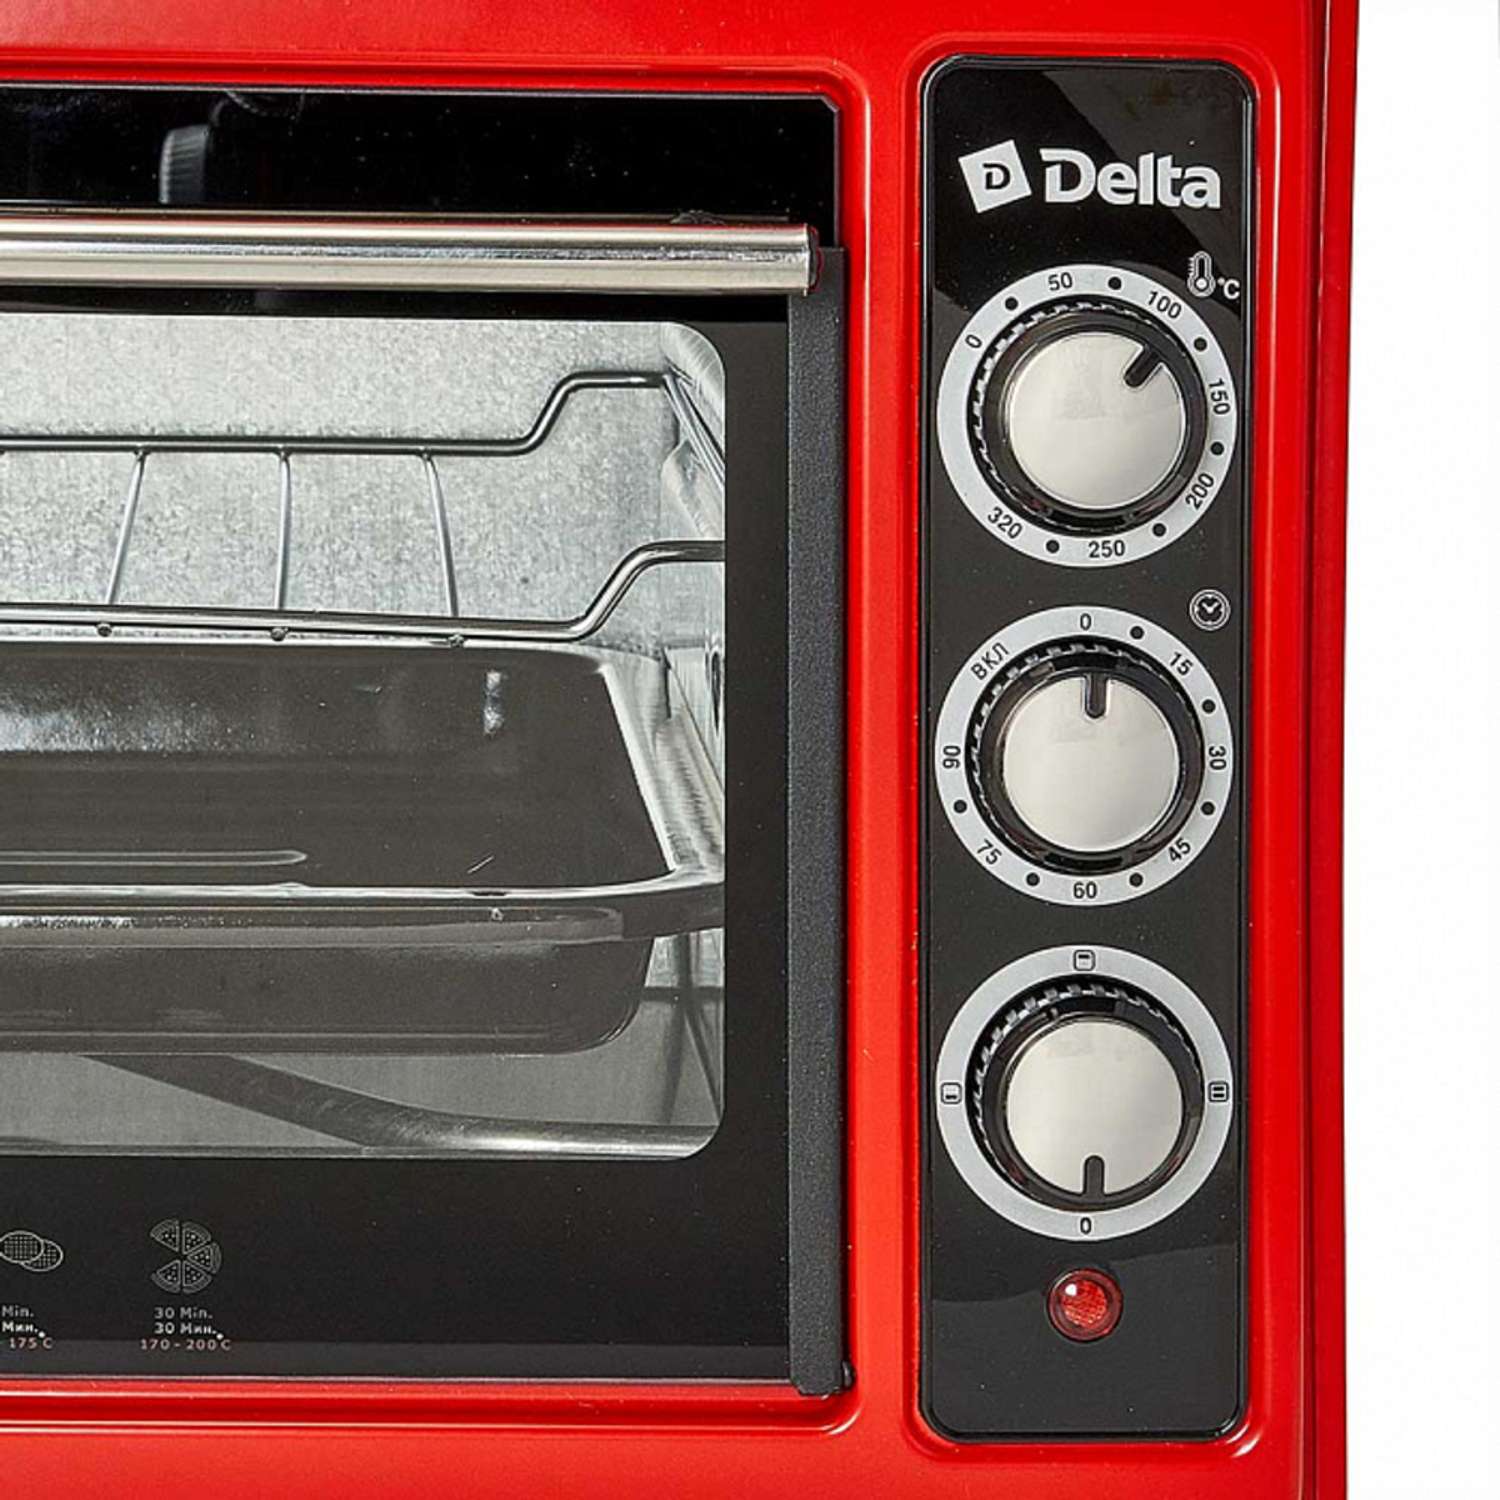 Мини-печь Delta D-0123 красная 1300 Вт 37 л 2 нагревательных элемента 1 противень решетка таймер - фото 2